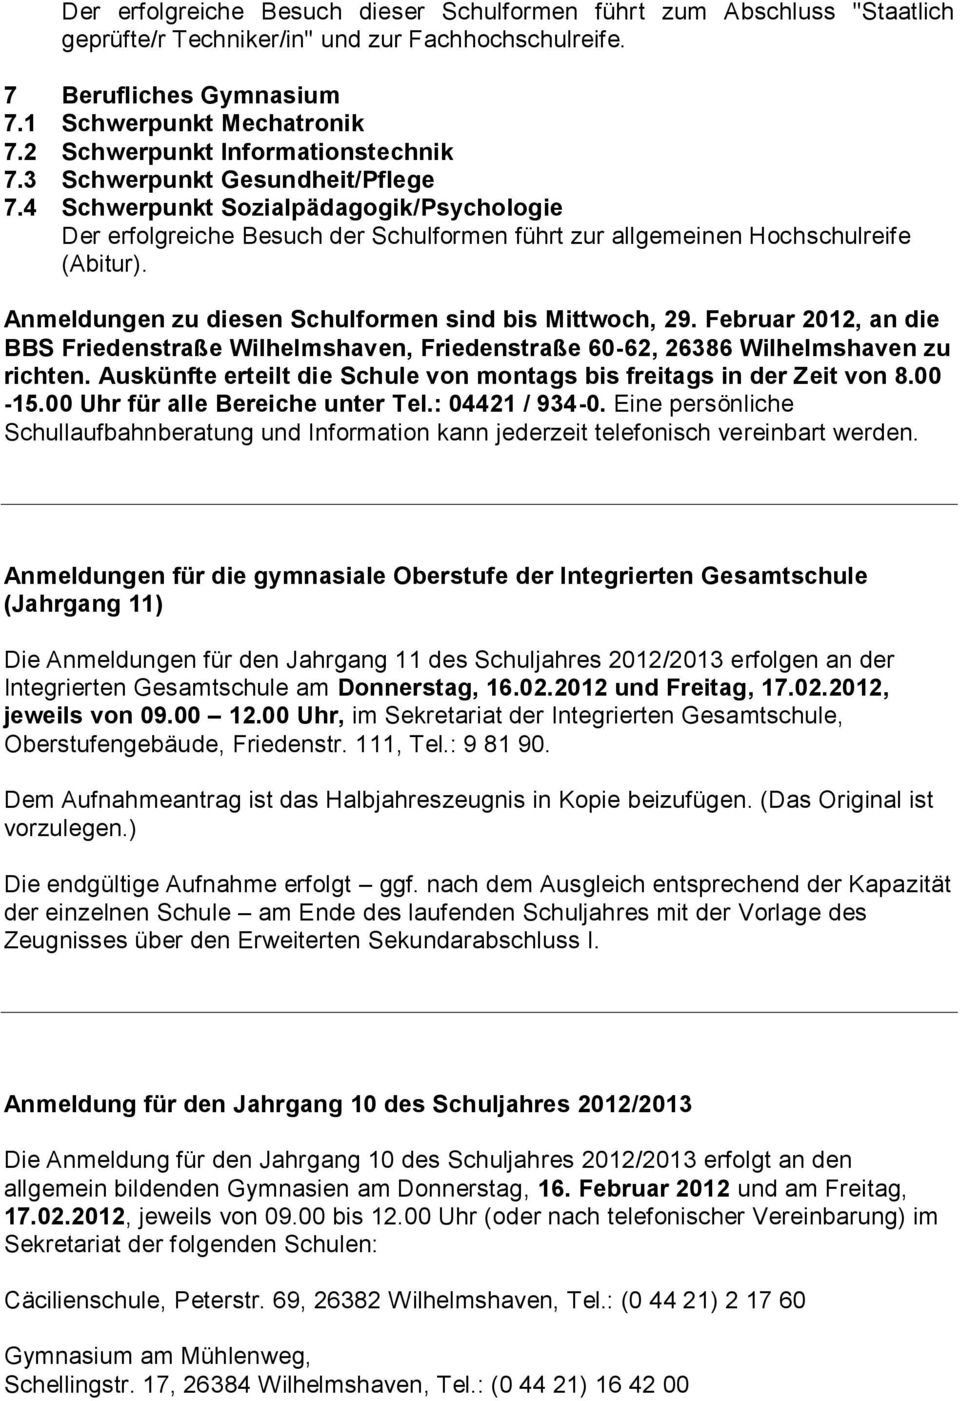 Anmeldungen zu diesen Schulformen sind bis Mittwoch, 29. Februar 2012, an die BBS Friedenstraße Wilhelmshaven, Friedenstraße 60-62, 26386 Wilhelmshaven zu richten.